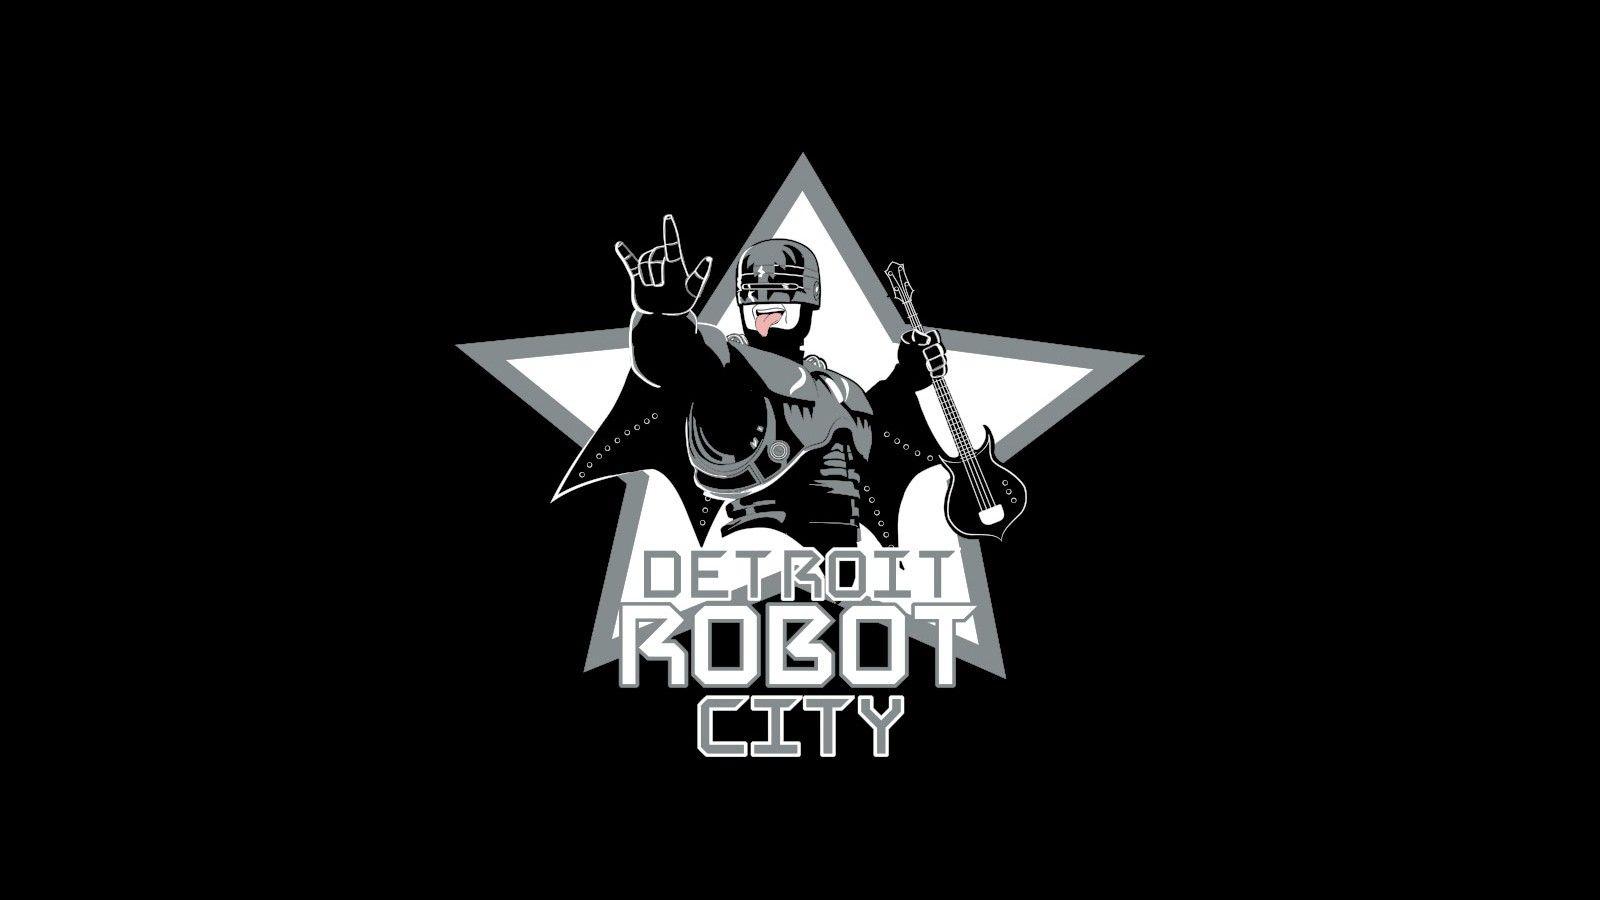 Robocop detroit robot city kiss music band wallpaper. AllWallpaper